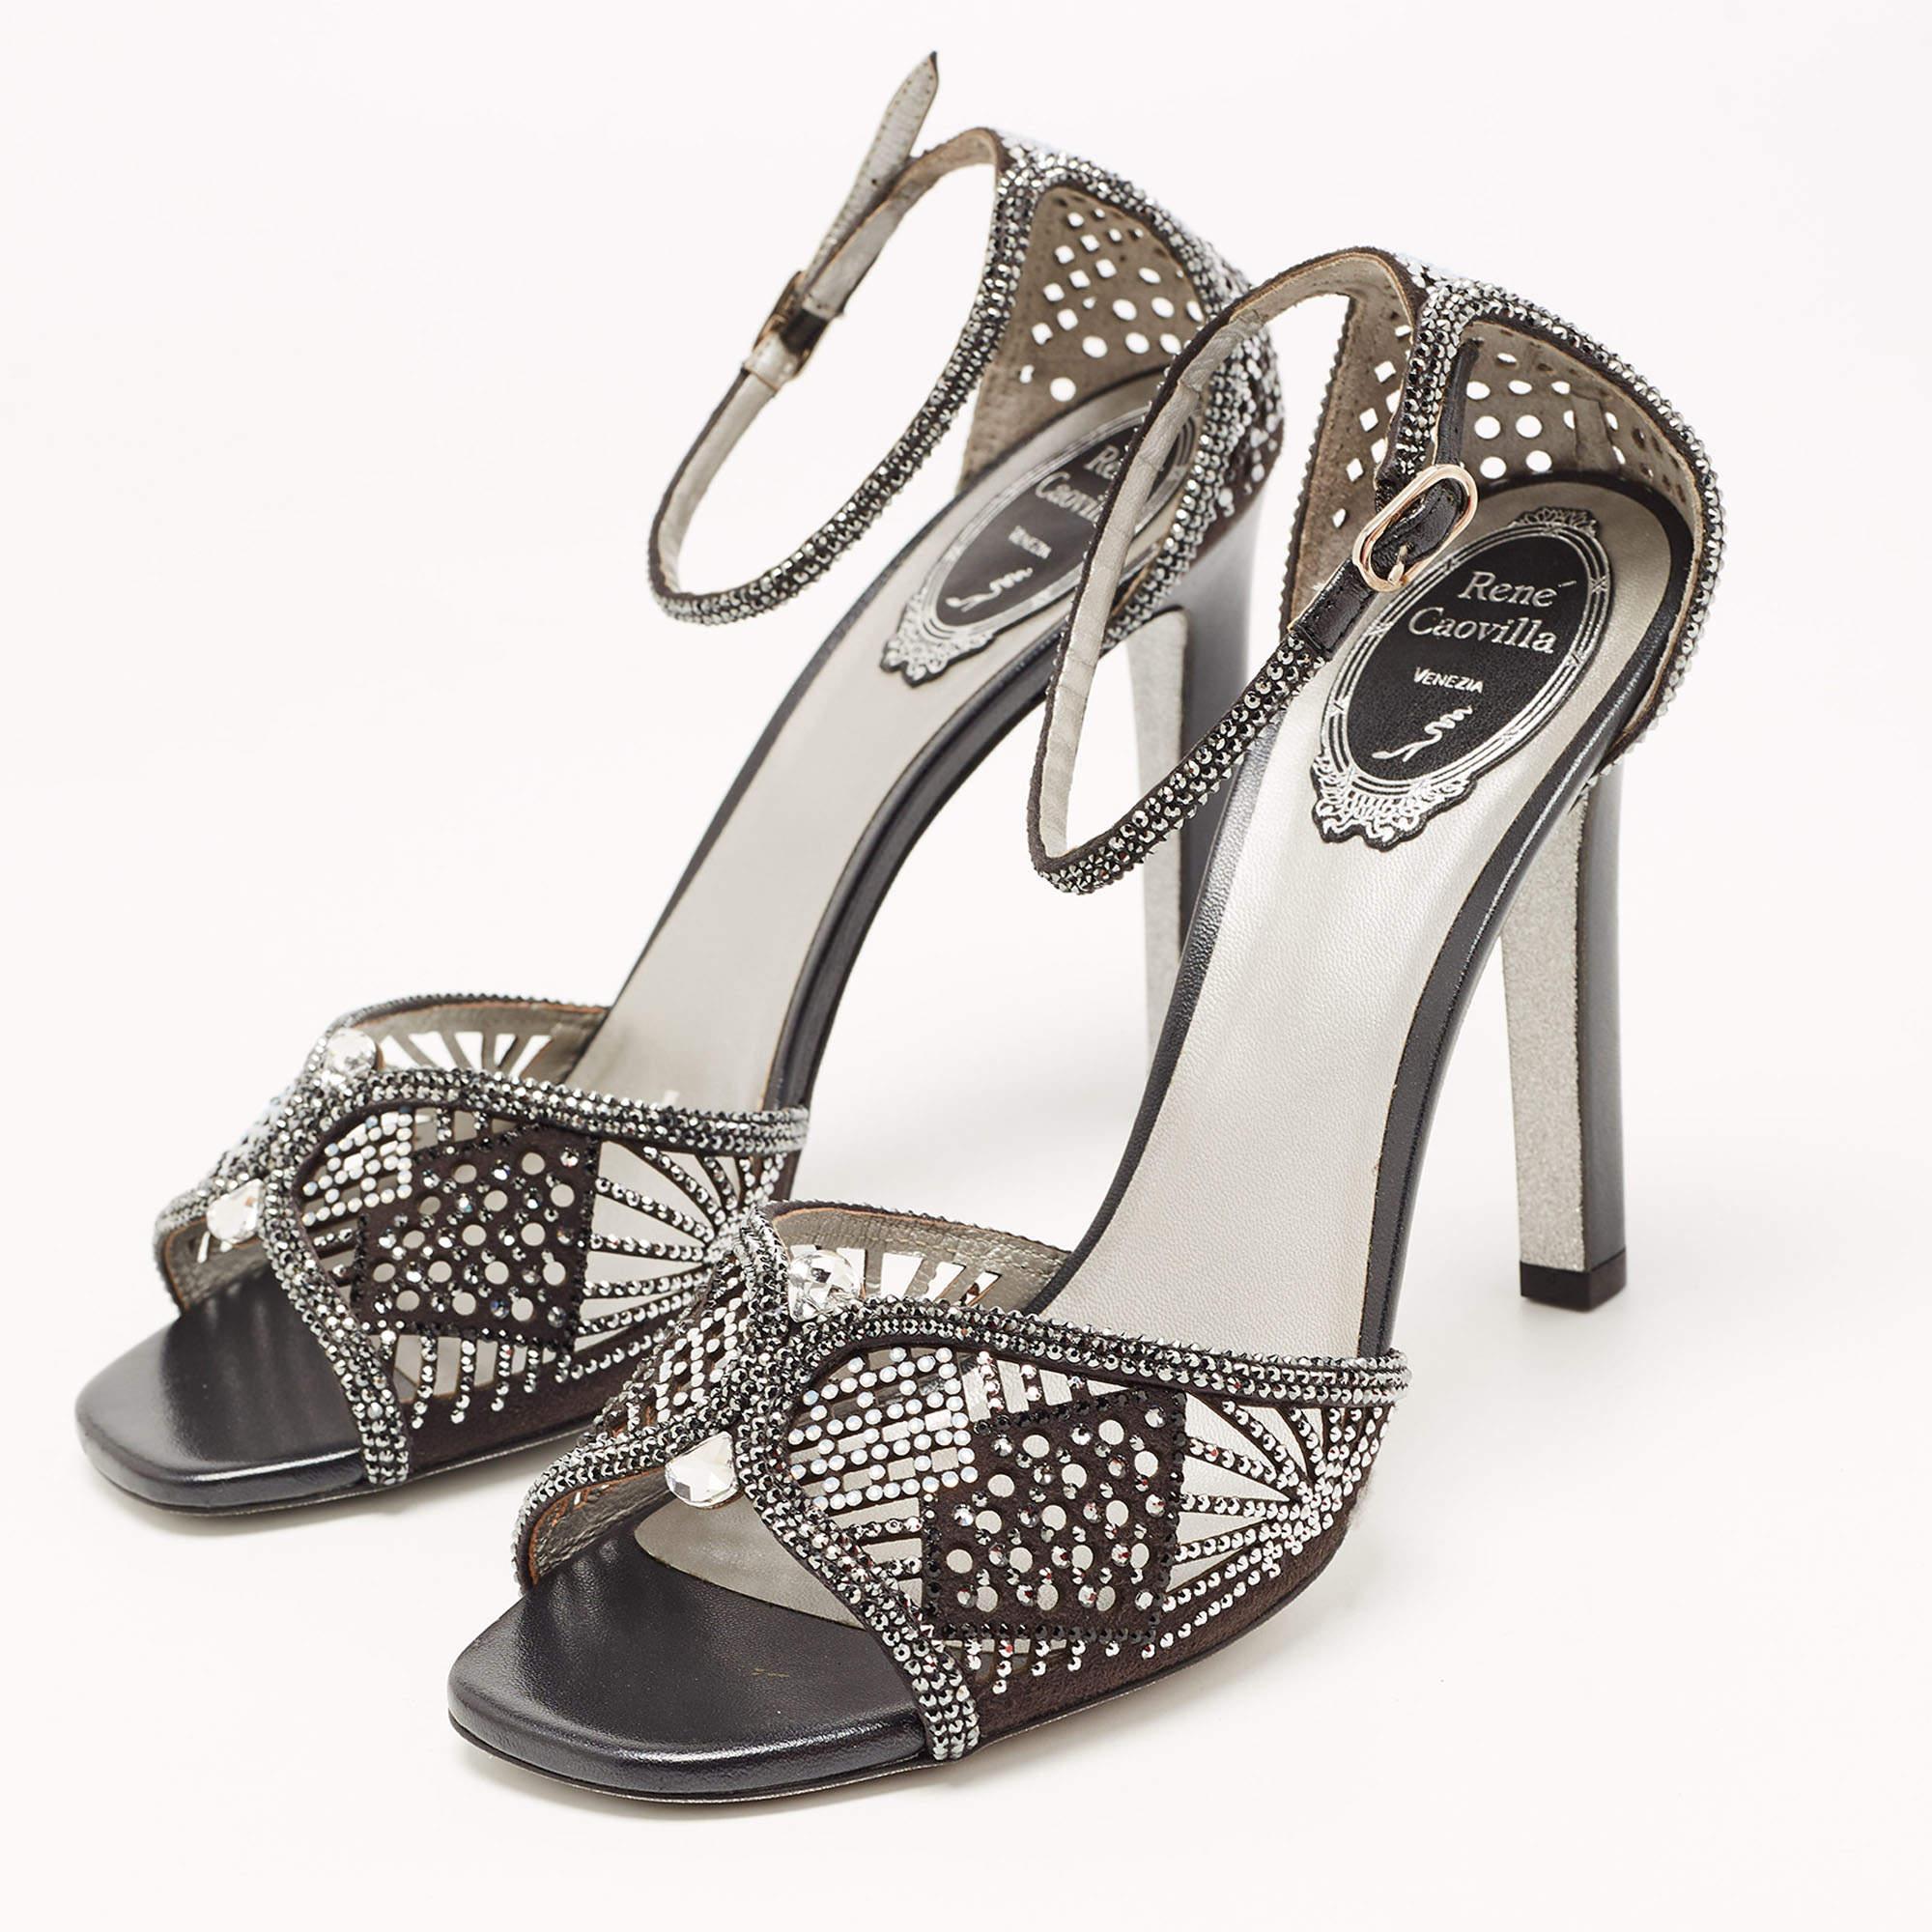 René Caovilla Black Suede Crystal Embellished Ankle Strap Sandals Size 39 4